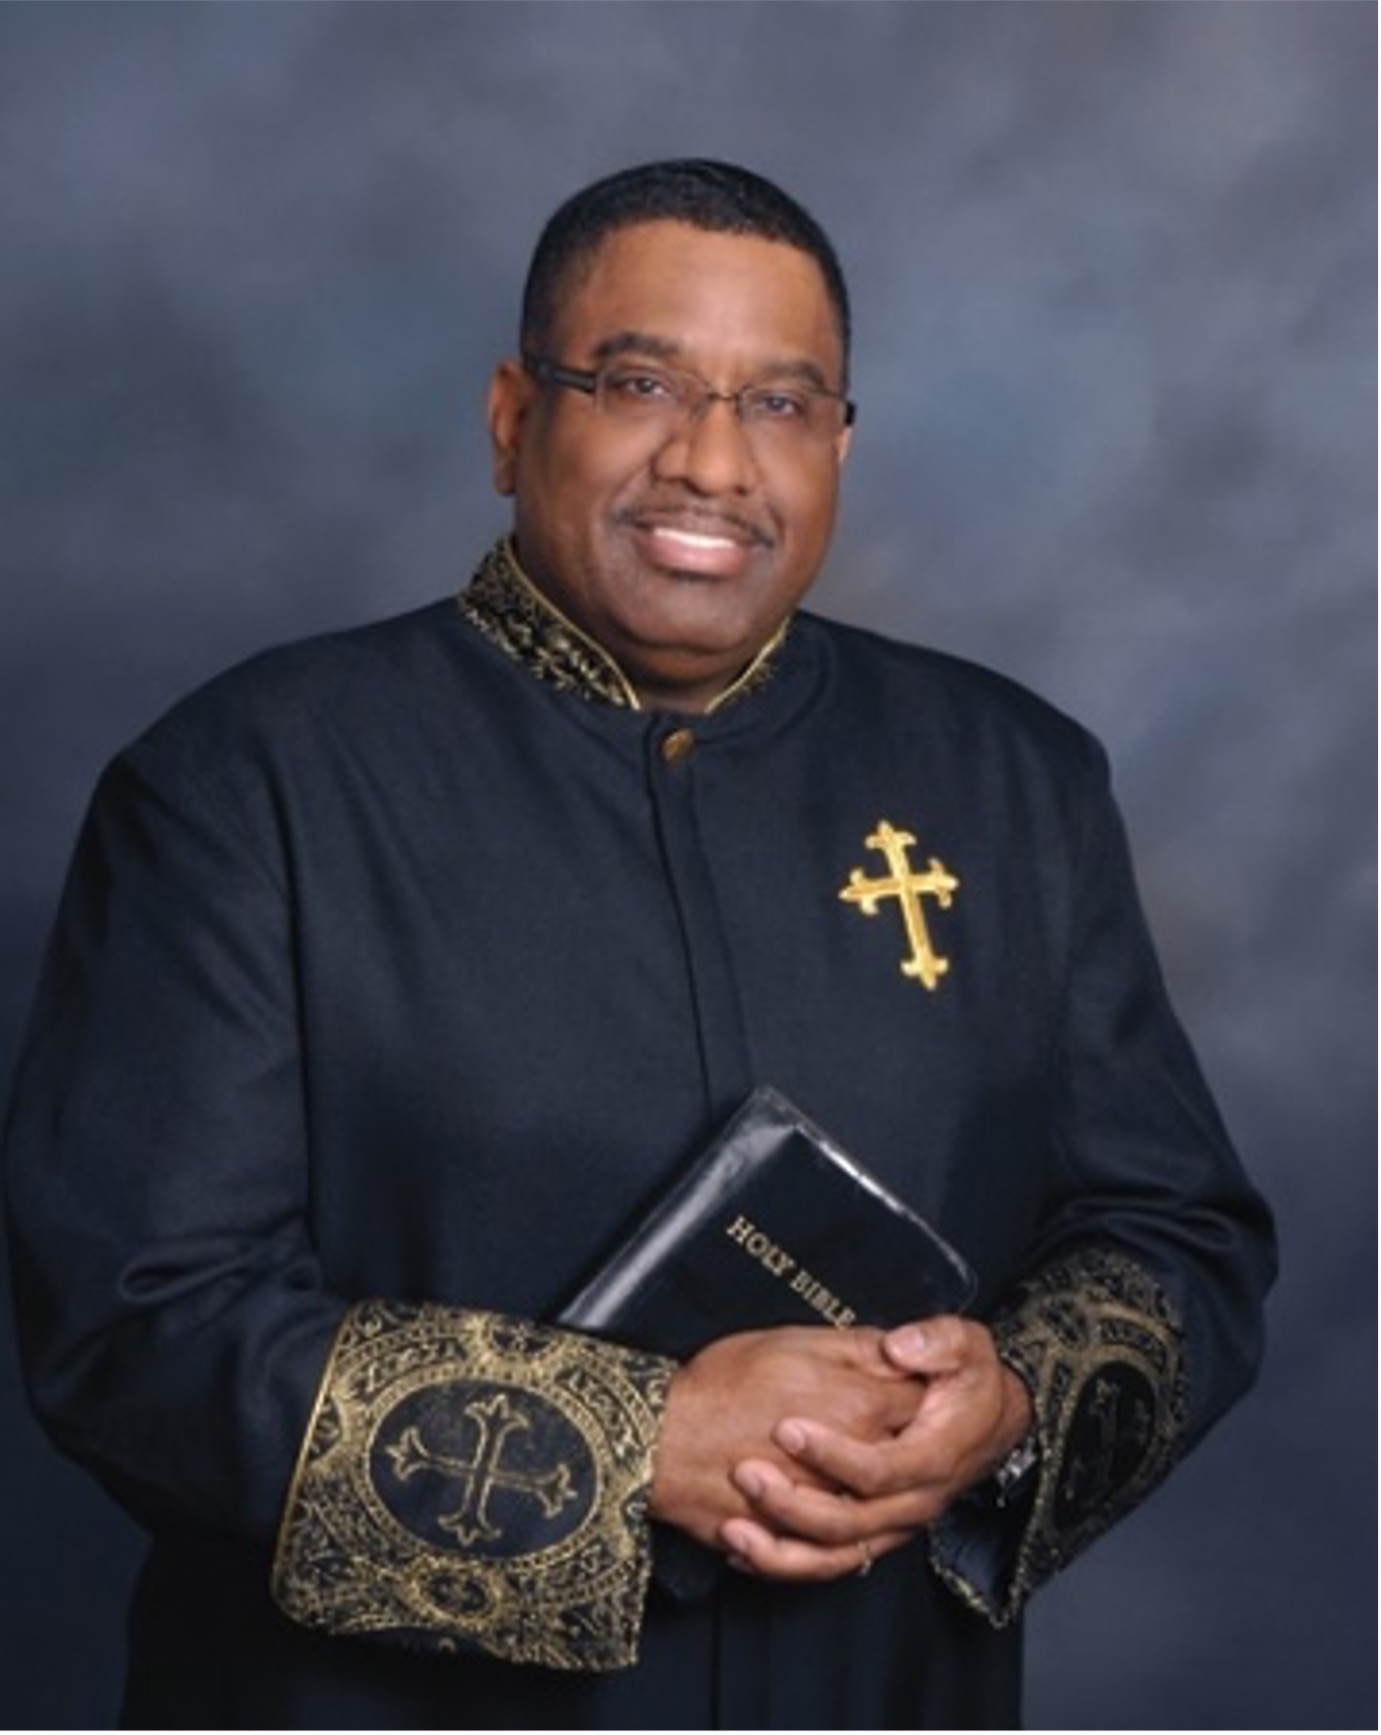 Bishop Eugene V. Reeves